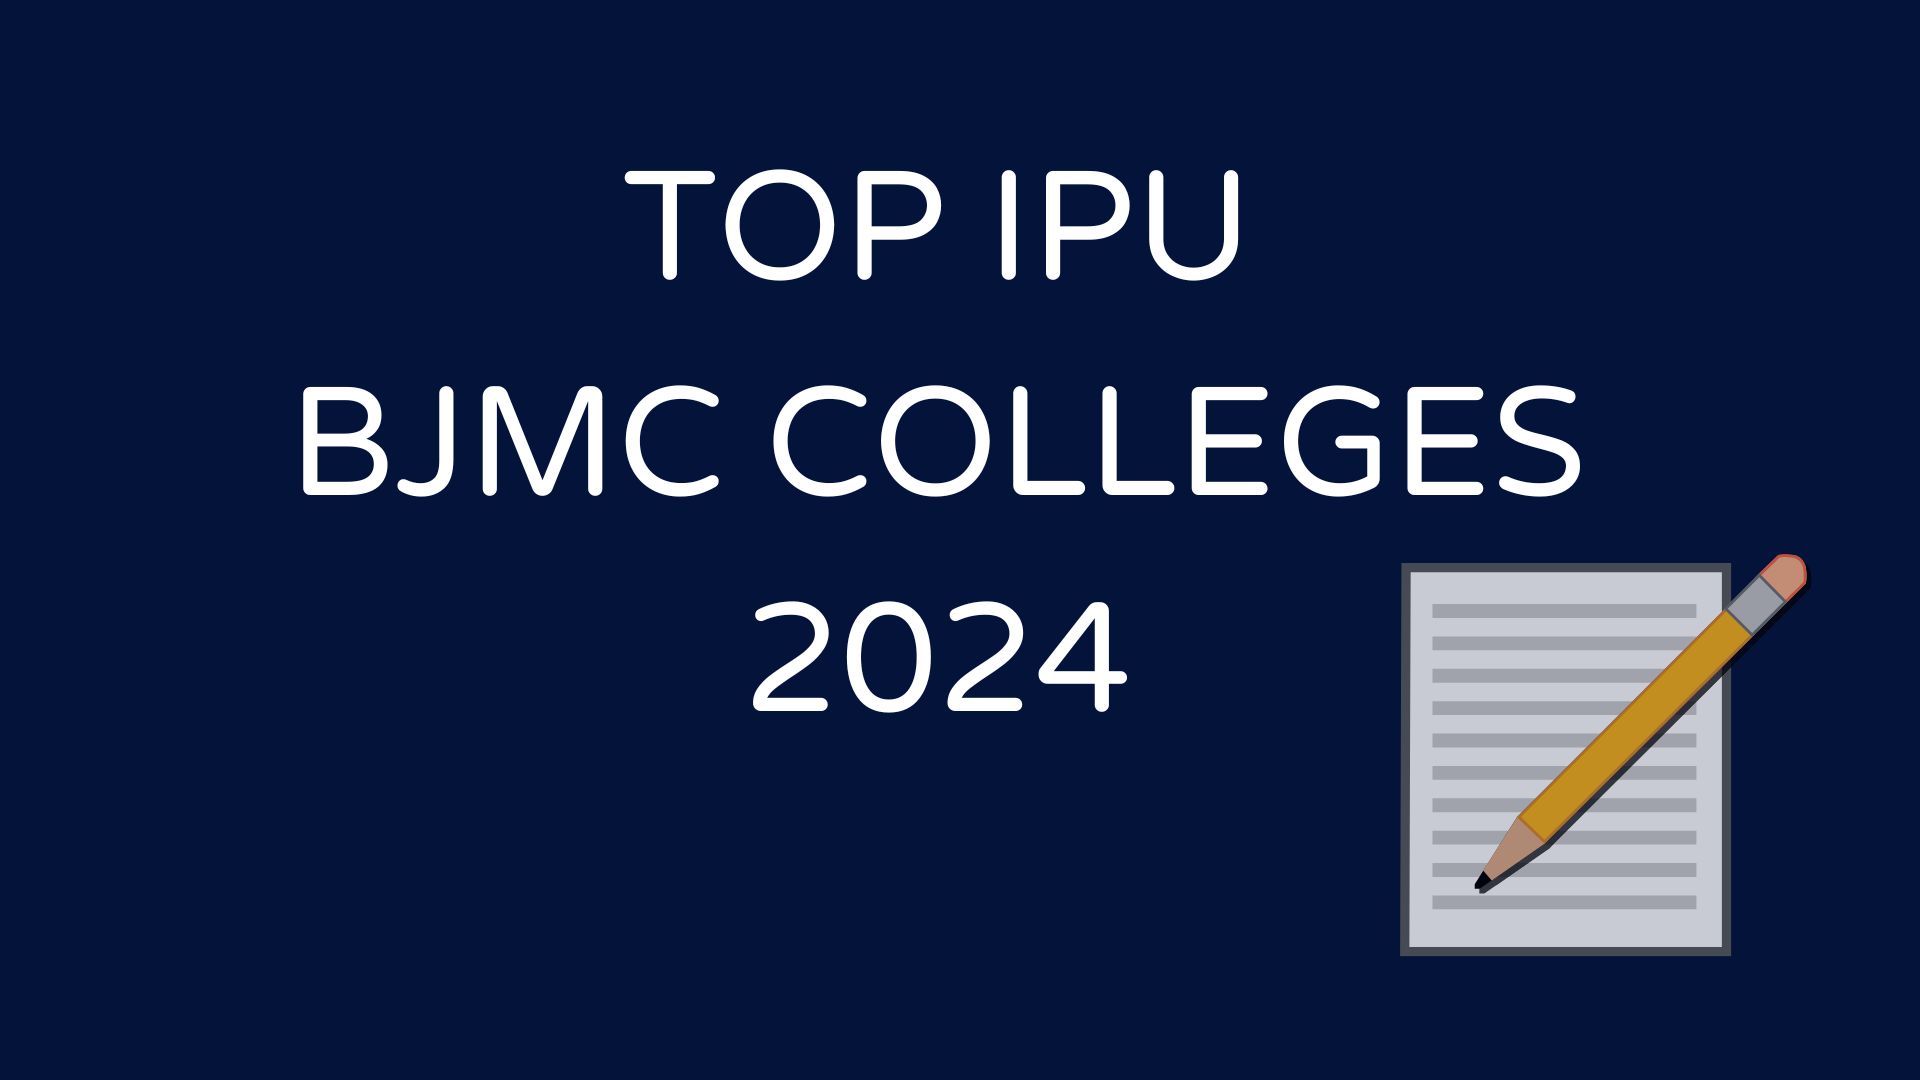 Top IPU BJMC Colleges 2024